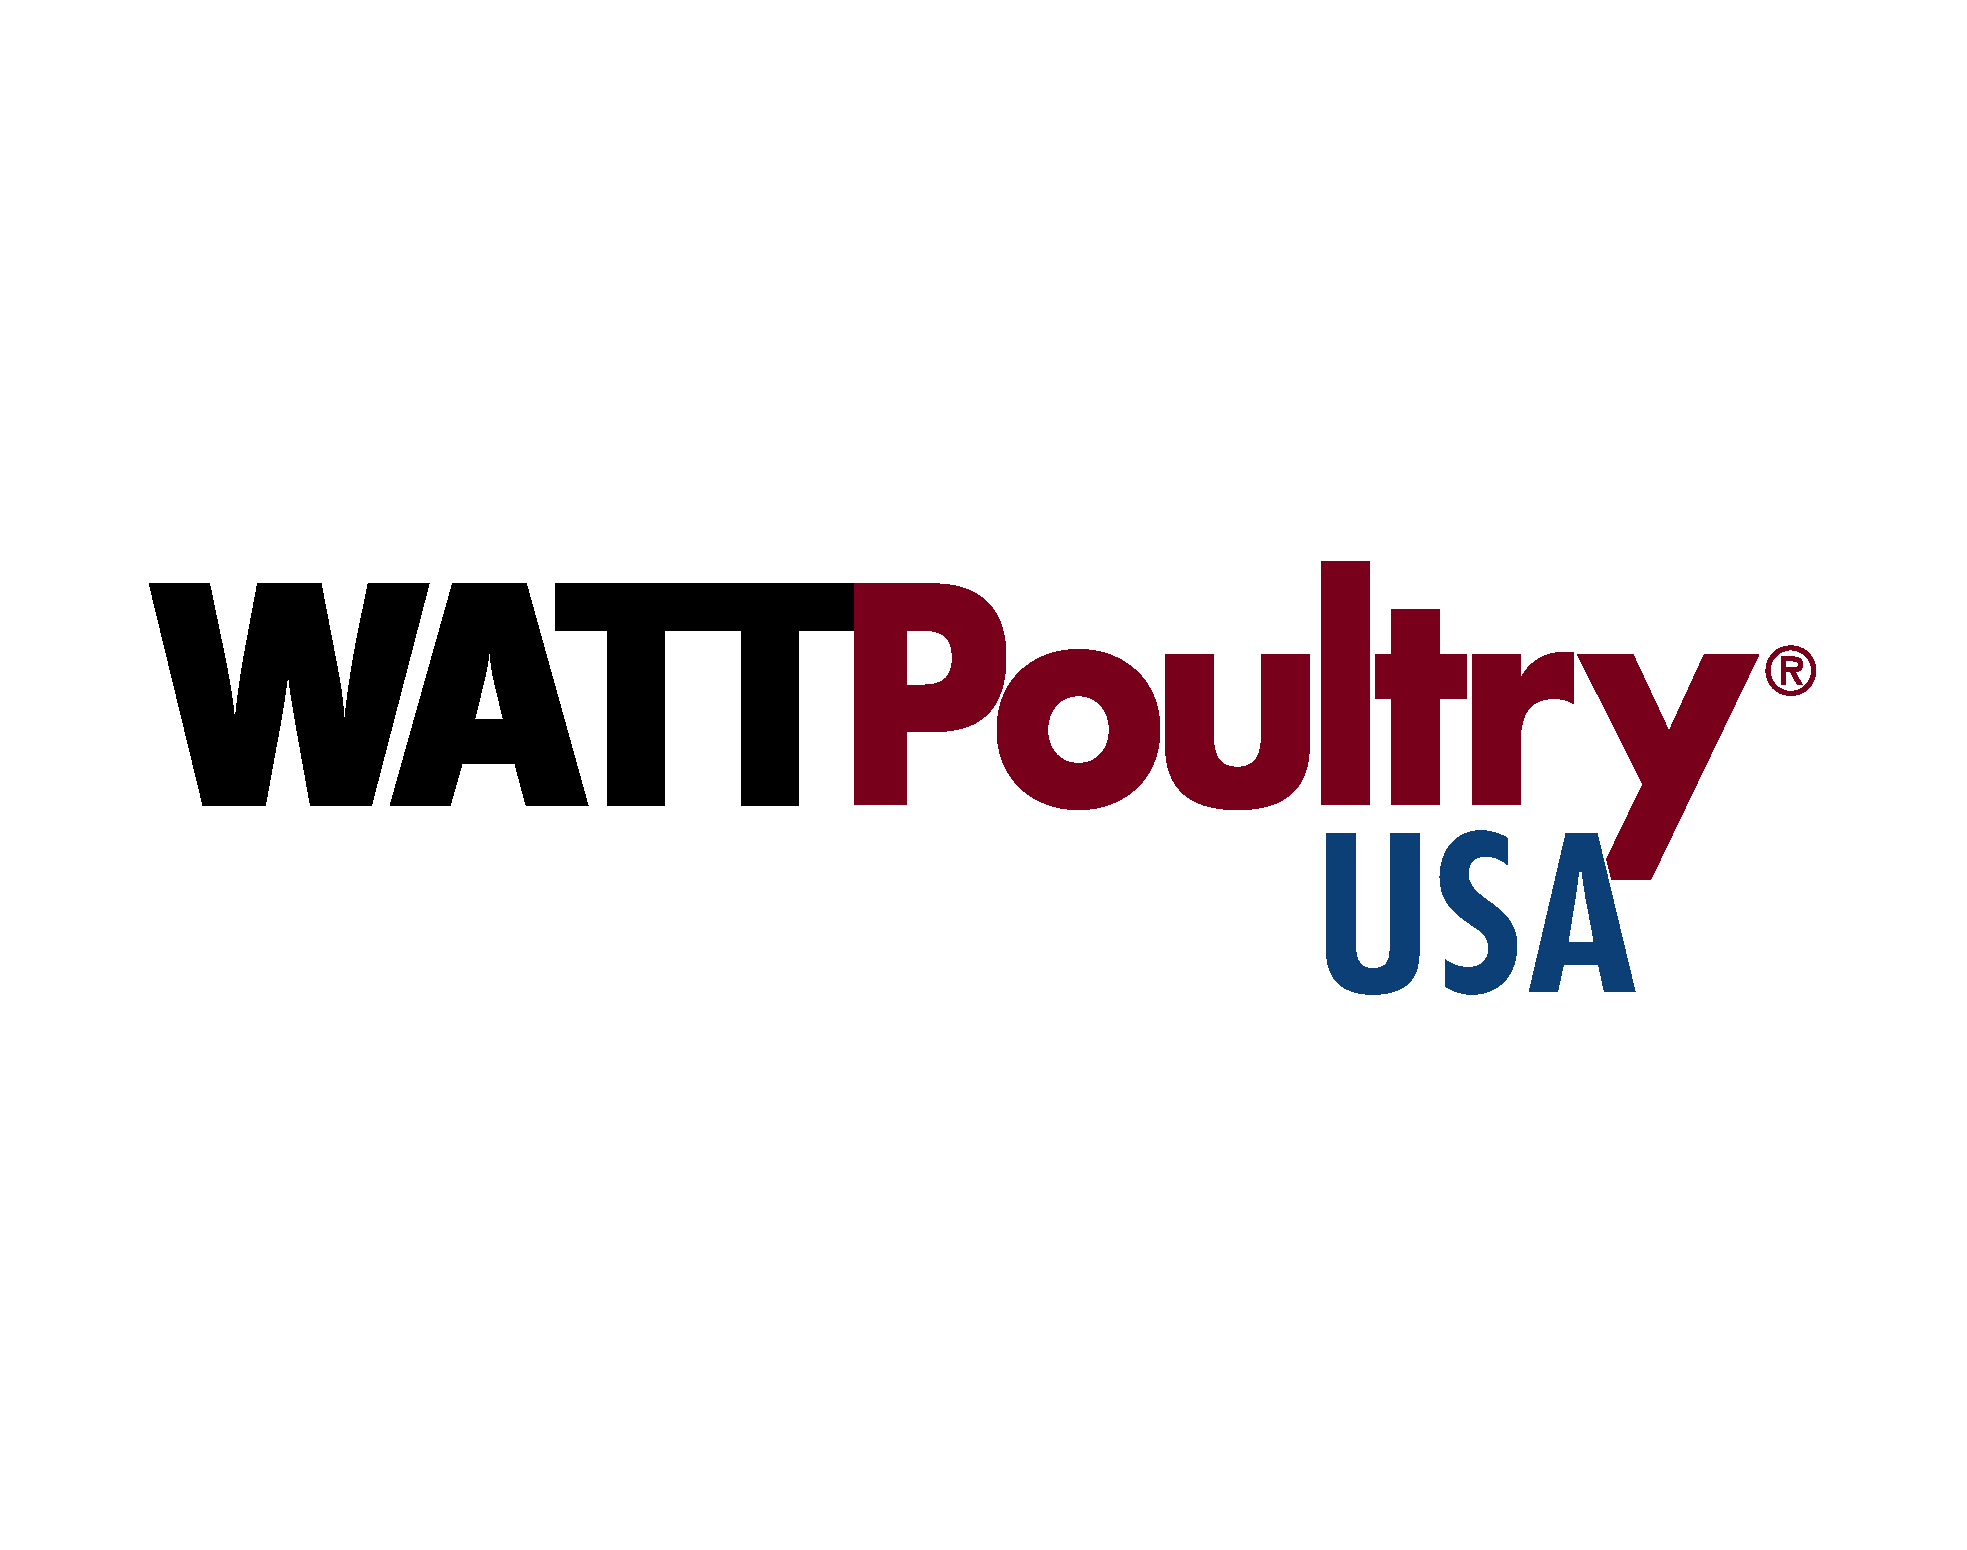 WATT Poultry USA